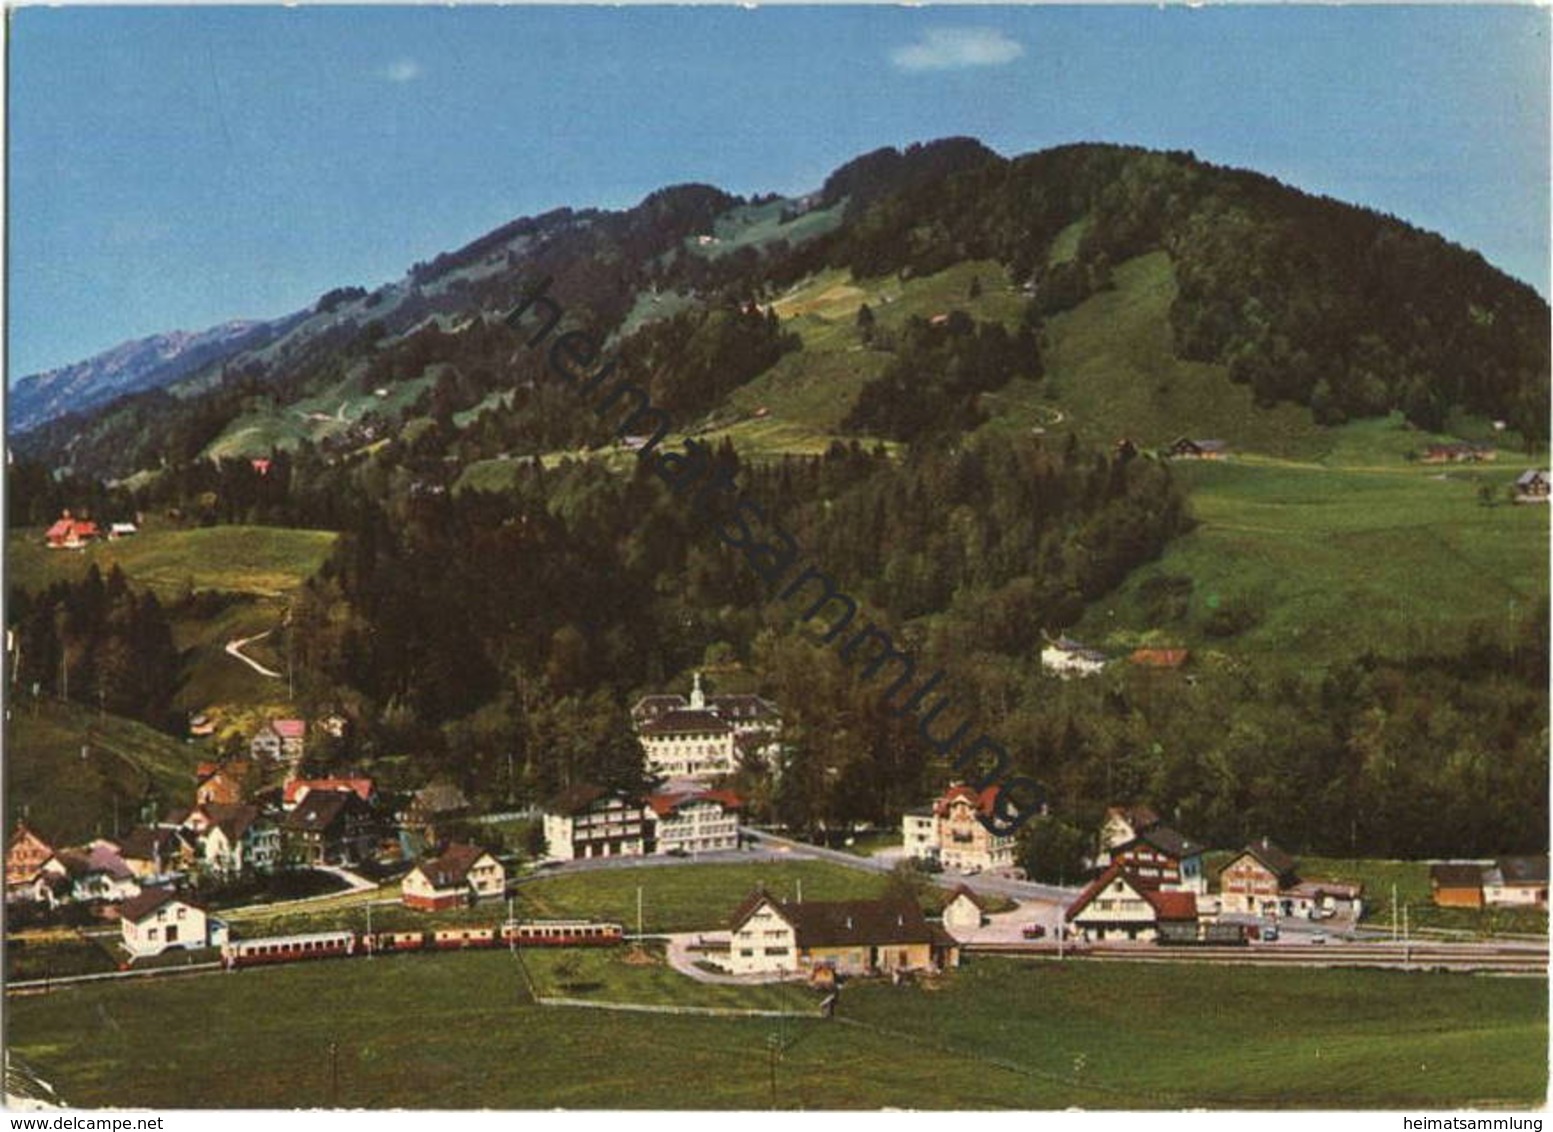 Weissbad - AK Grossformat - Verlag Foto-Gross St. Gallen - Weissbad 